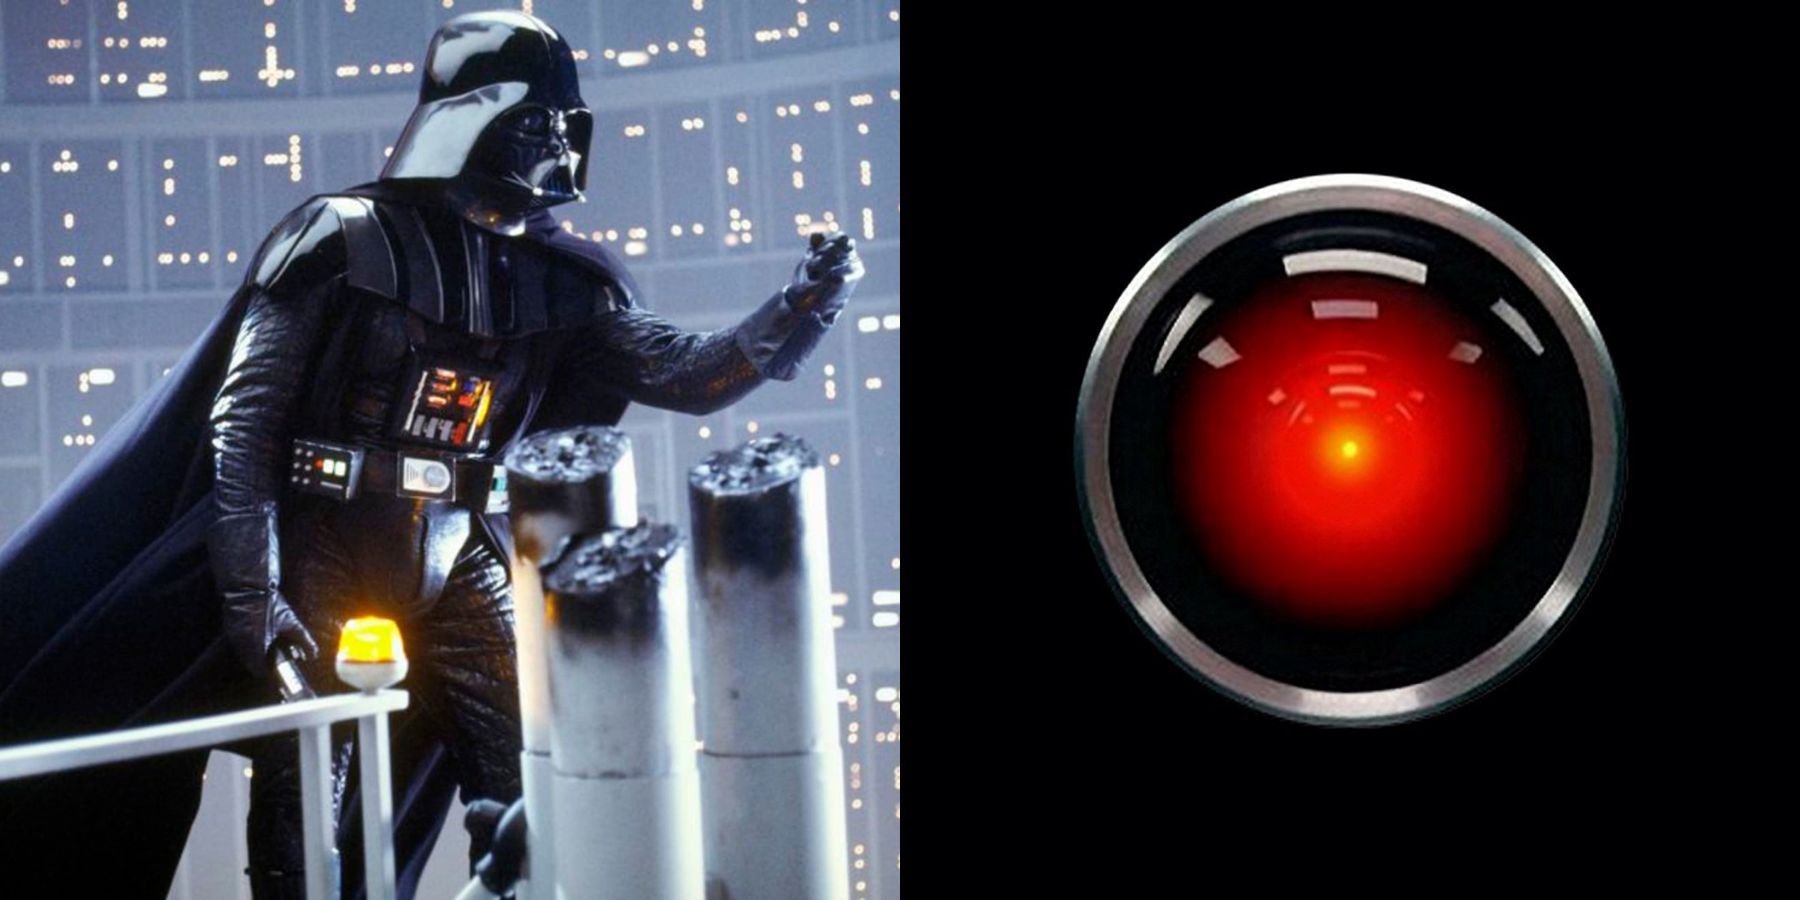 Darth Vader and HAL 9000